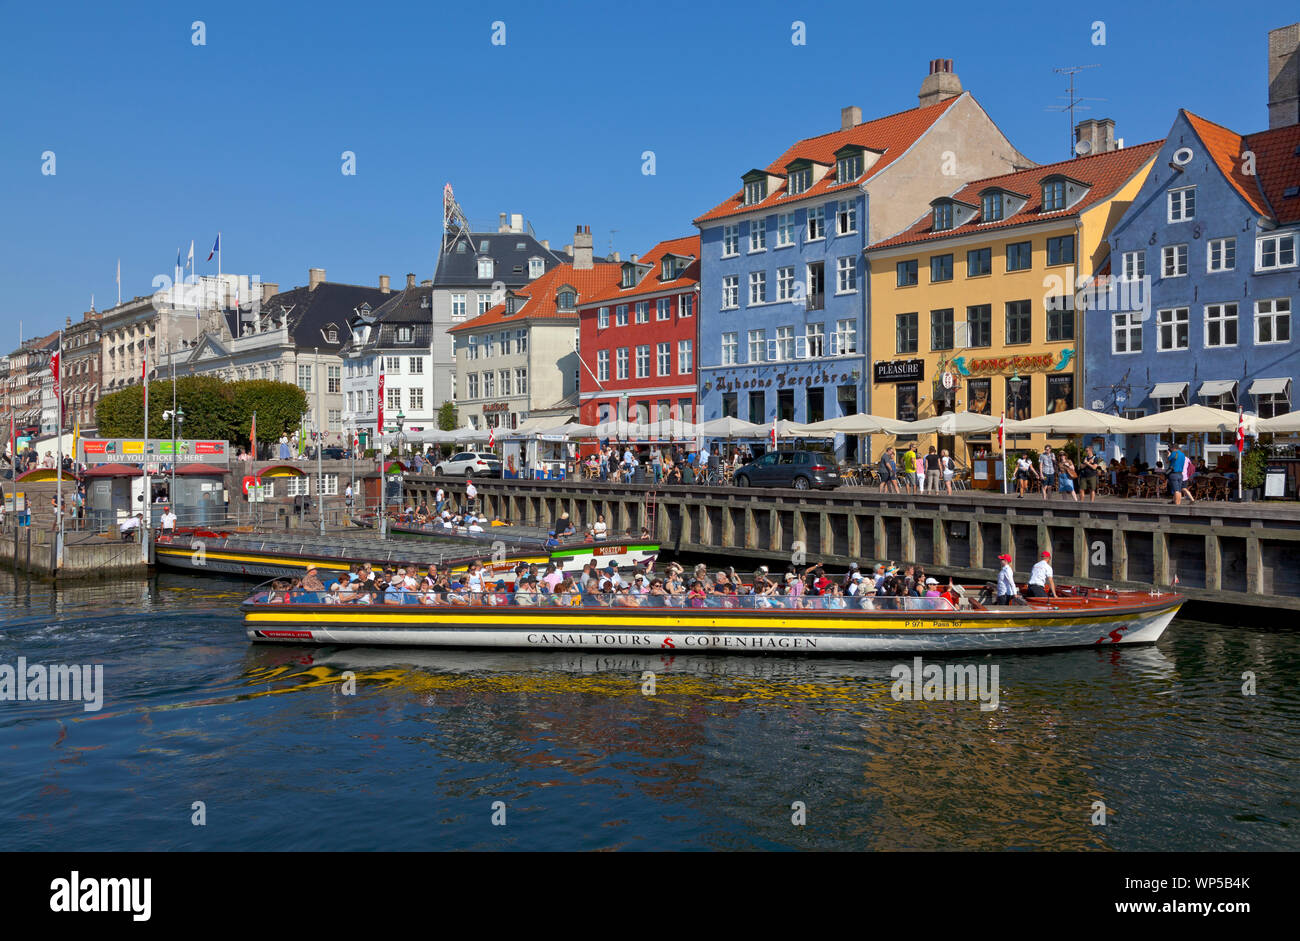 Excursión en barco crucero por el canal comenzando desde el extremo del canal de Nyhavn en Kongens Nytorv moviendo alon las hermosas casas antiguas de colores brillantes a lo largo del canal. Foto de stock